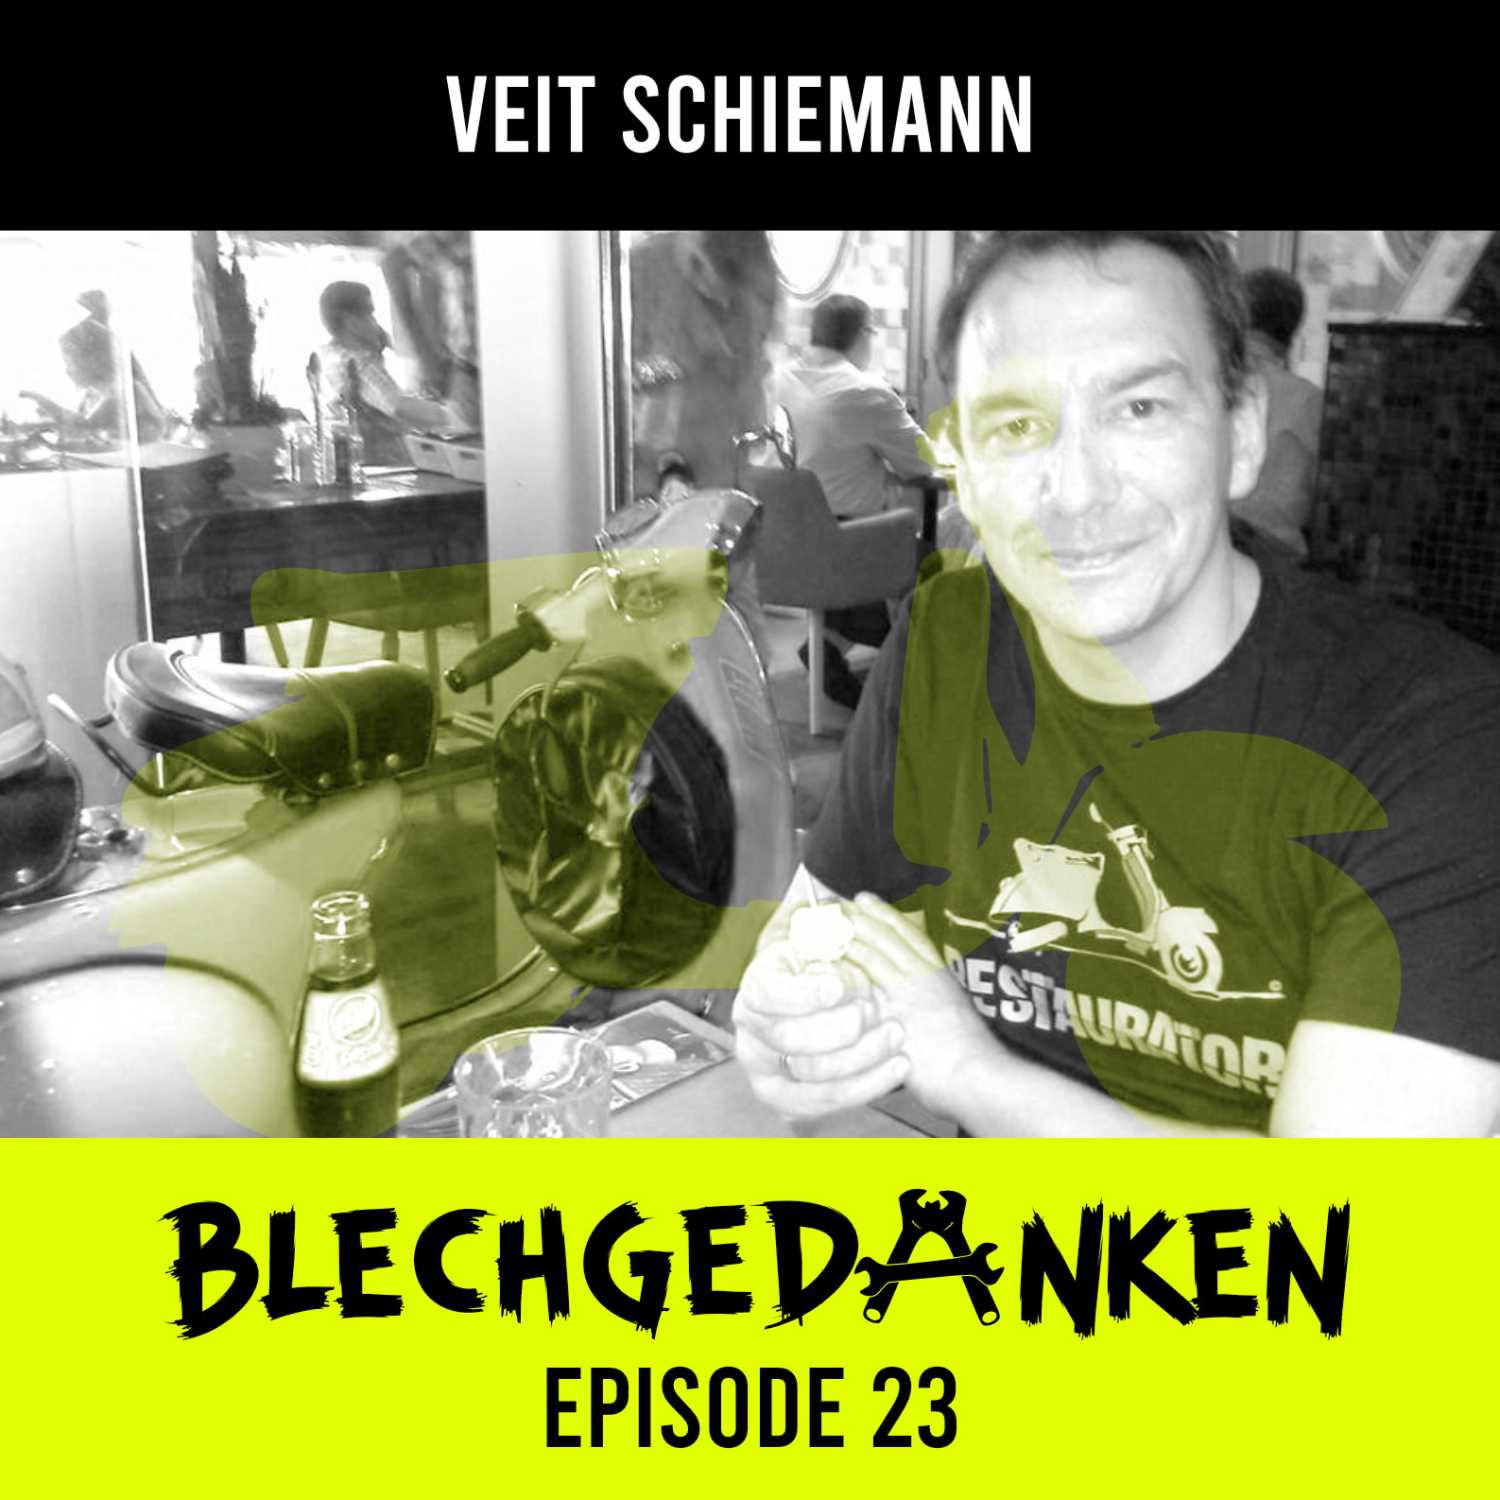 Blechgedanken Episode 23 -  Veit Schiemann - Jäger & Sammler, Oldstyle Magazin und das Guinessbuch